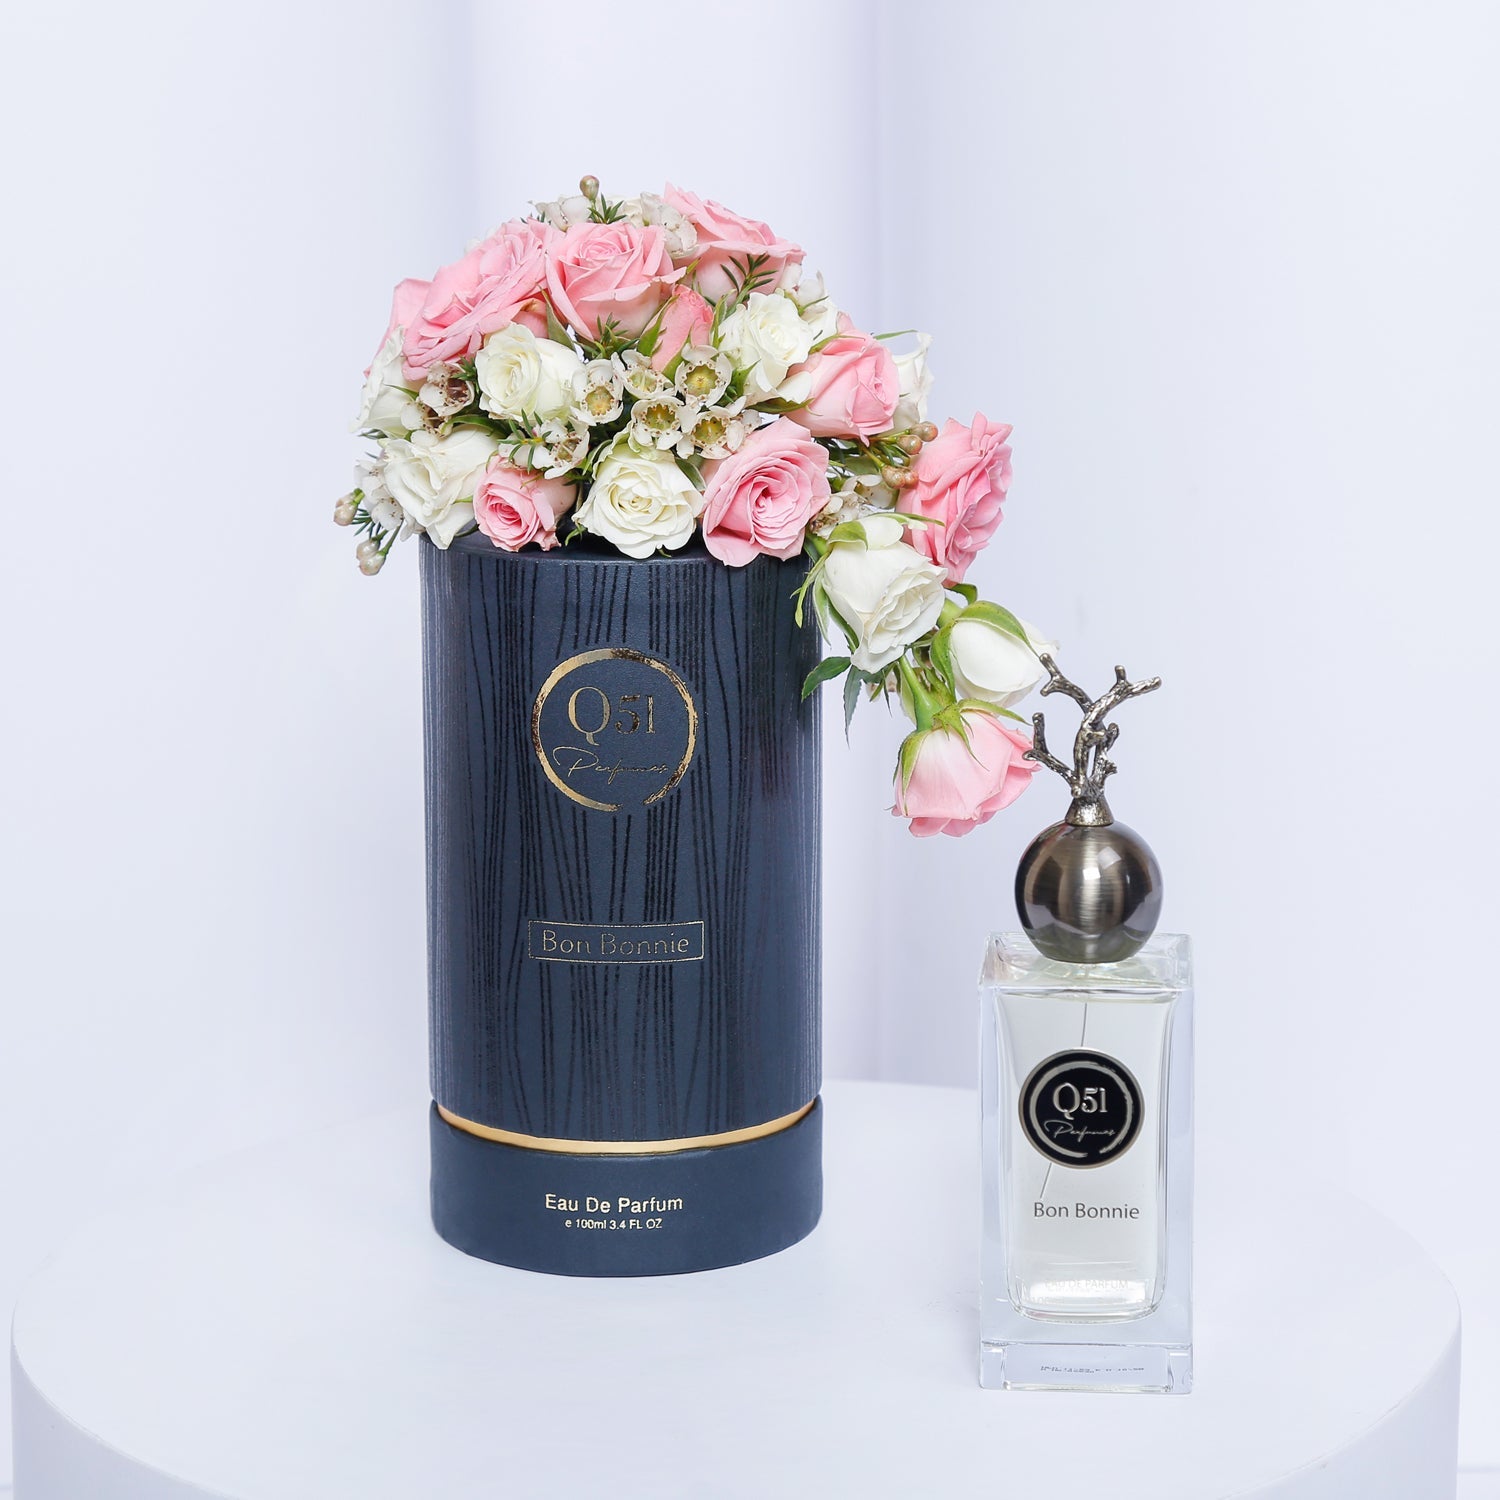 Bon Bonnie EDP 100 ml from Q51 Perfumes